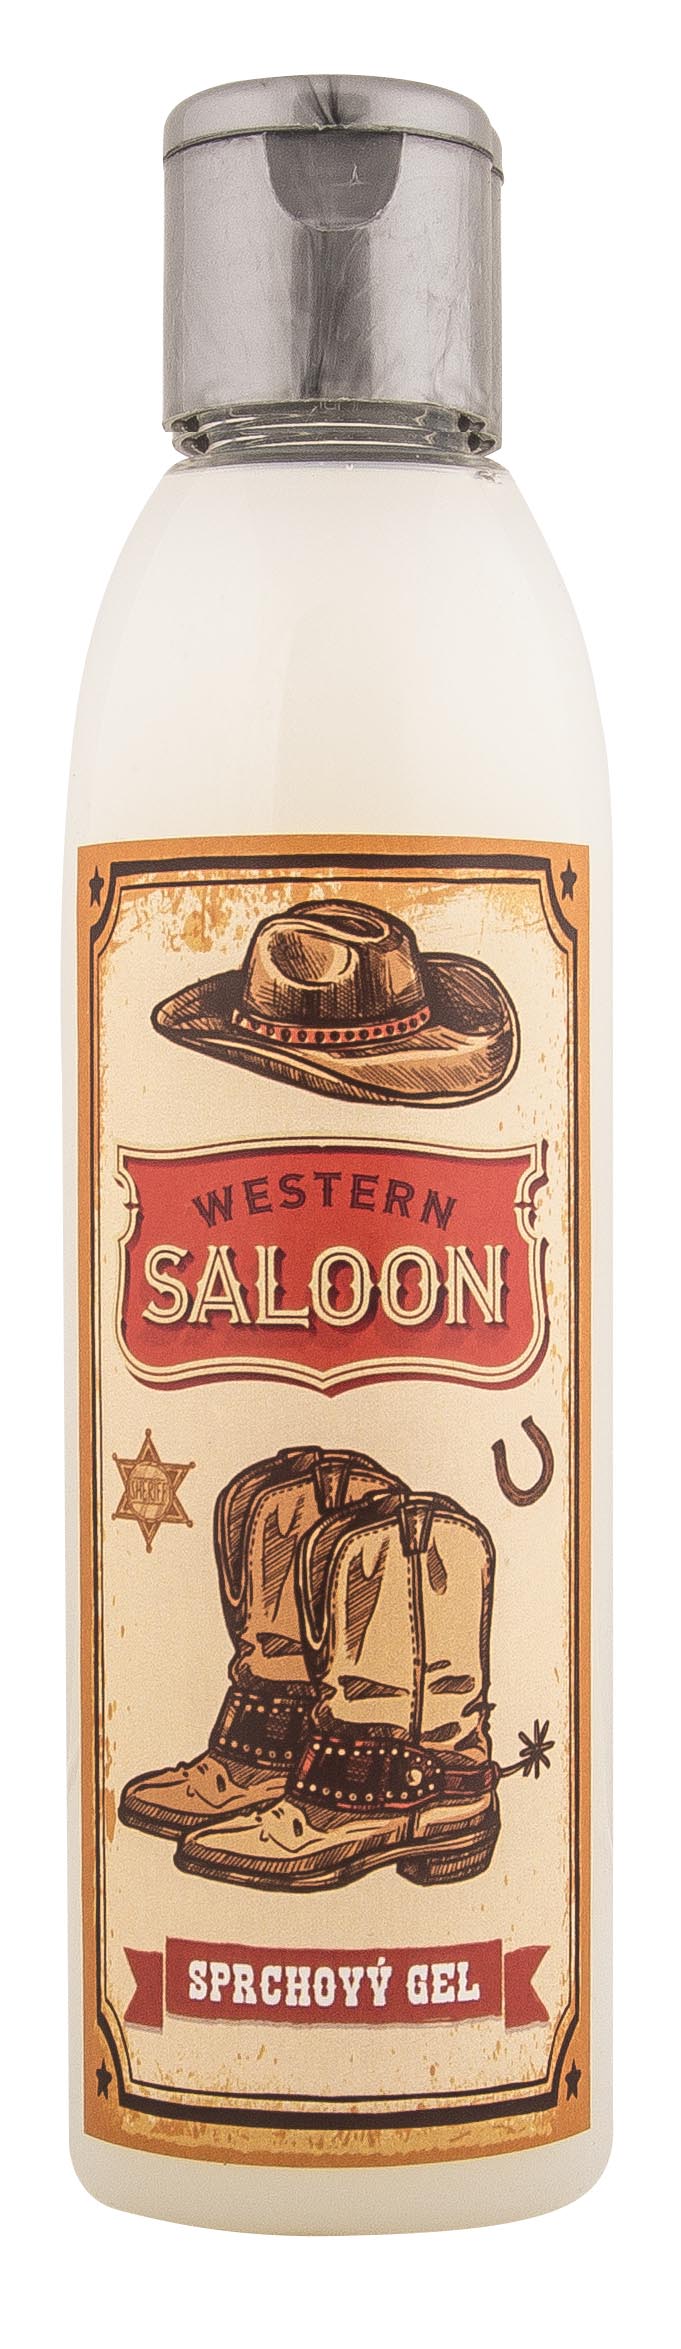 Kosmetika v knize - Western saloon